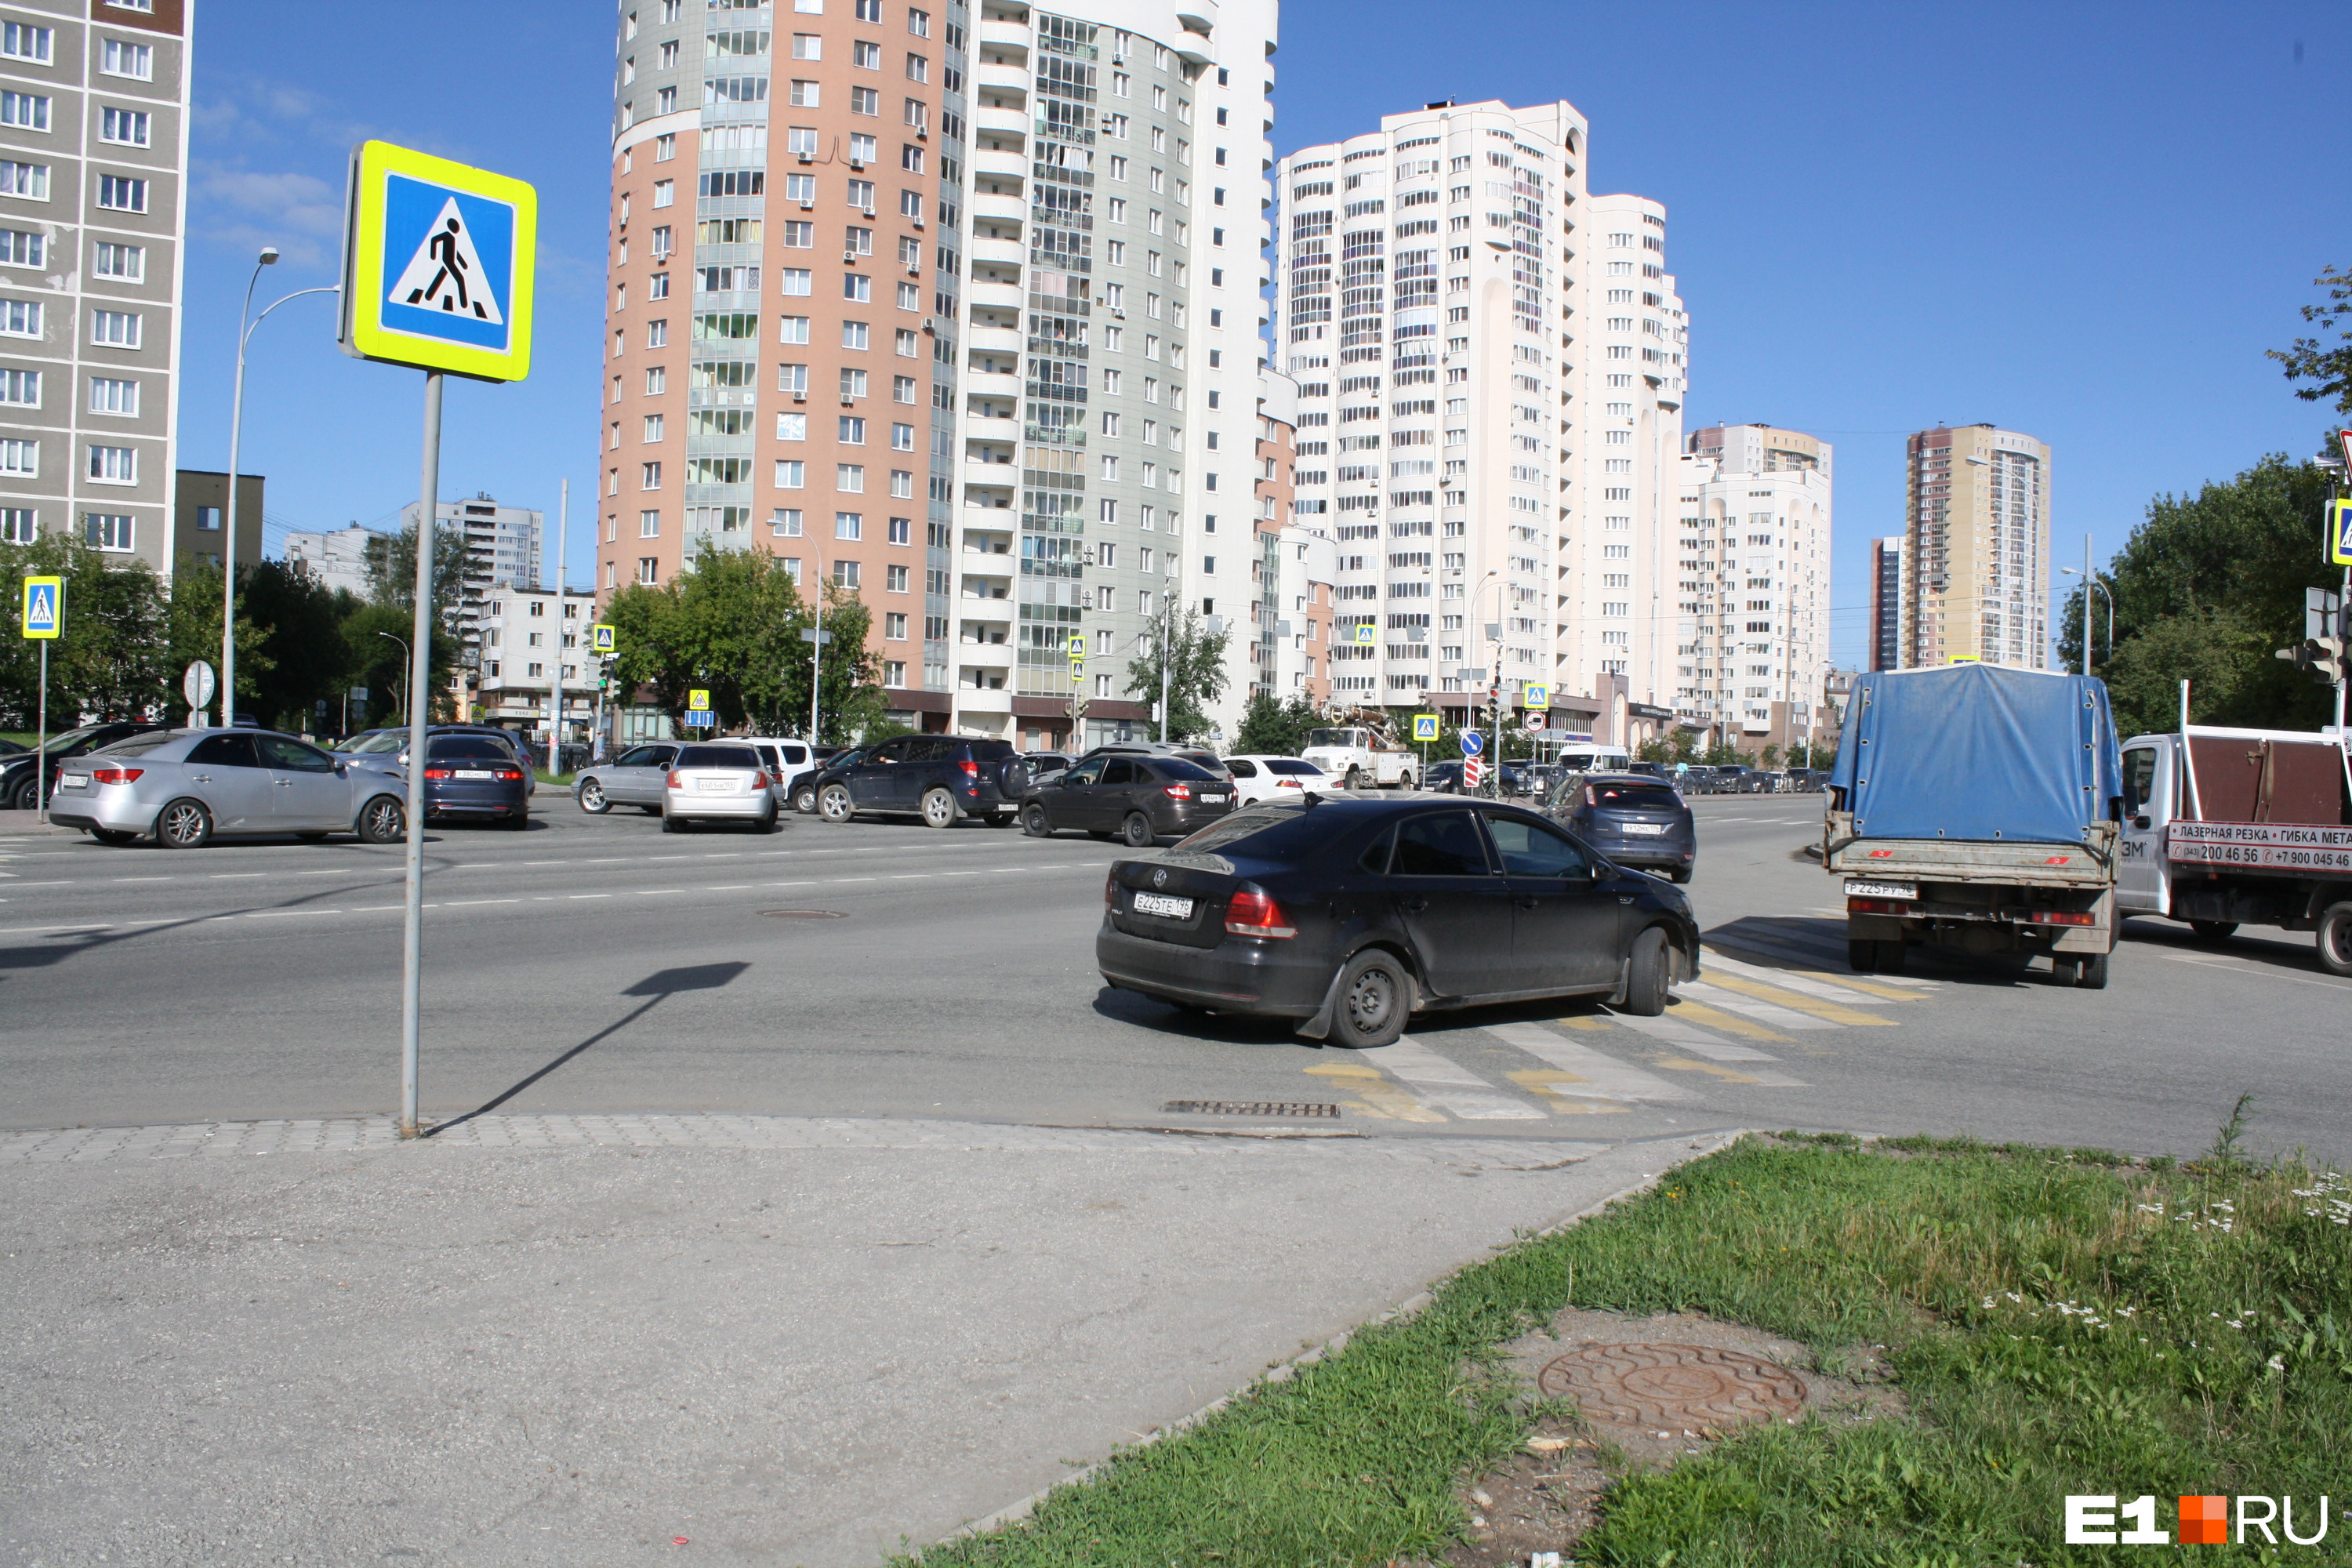 Путаница на перекрестке Луганской и Саввы Белых. Перекресток не справляется с наплывом тех, кто хочет развернуться в направлении Кольцово